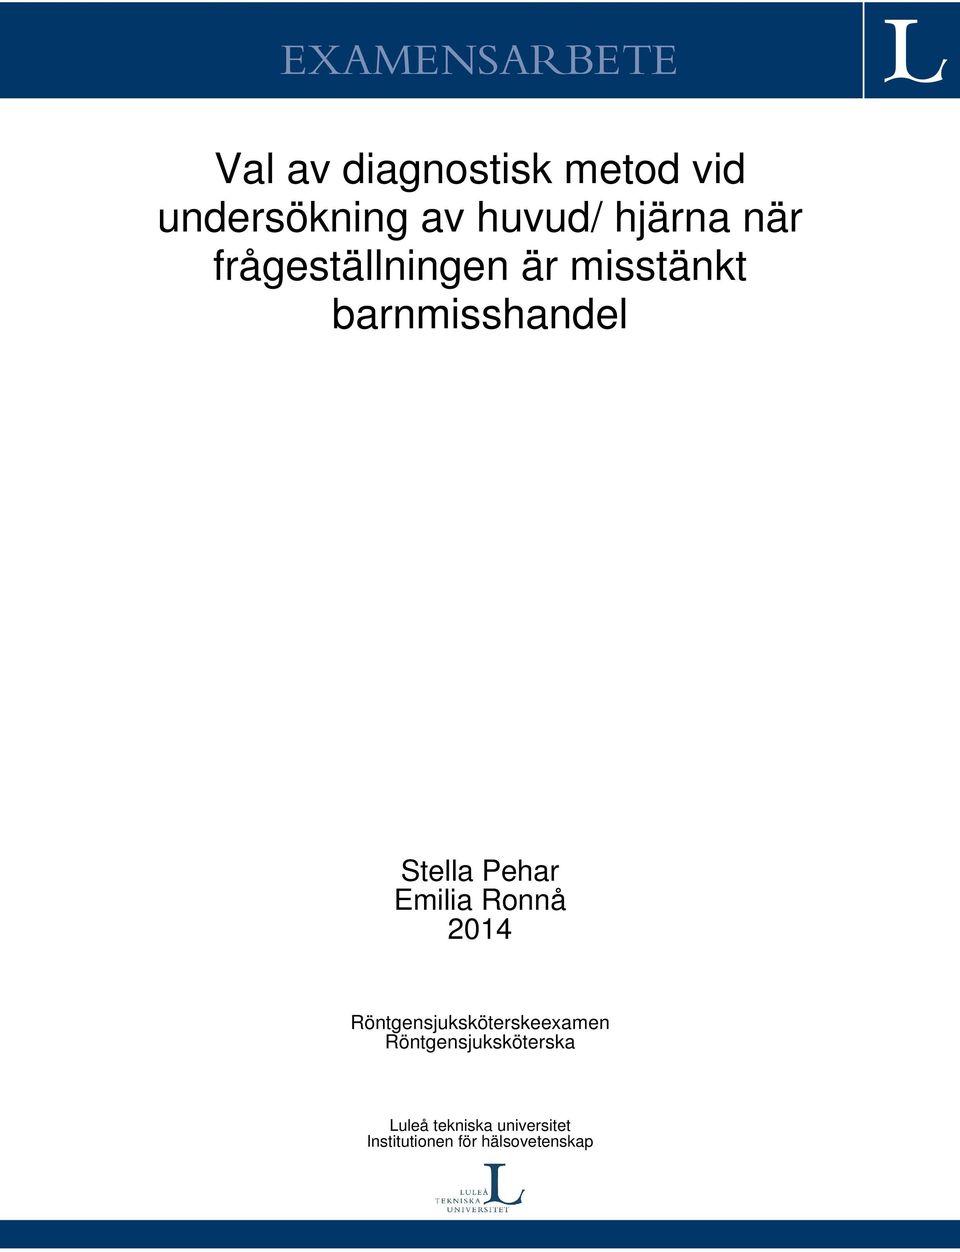 Stella Pehar Emilia Ronnå 2014 Röntgensjuksköterskeexamen